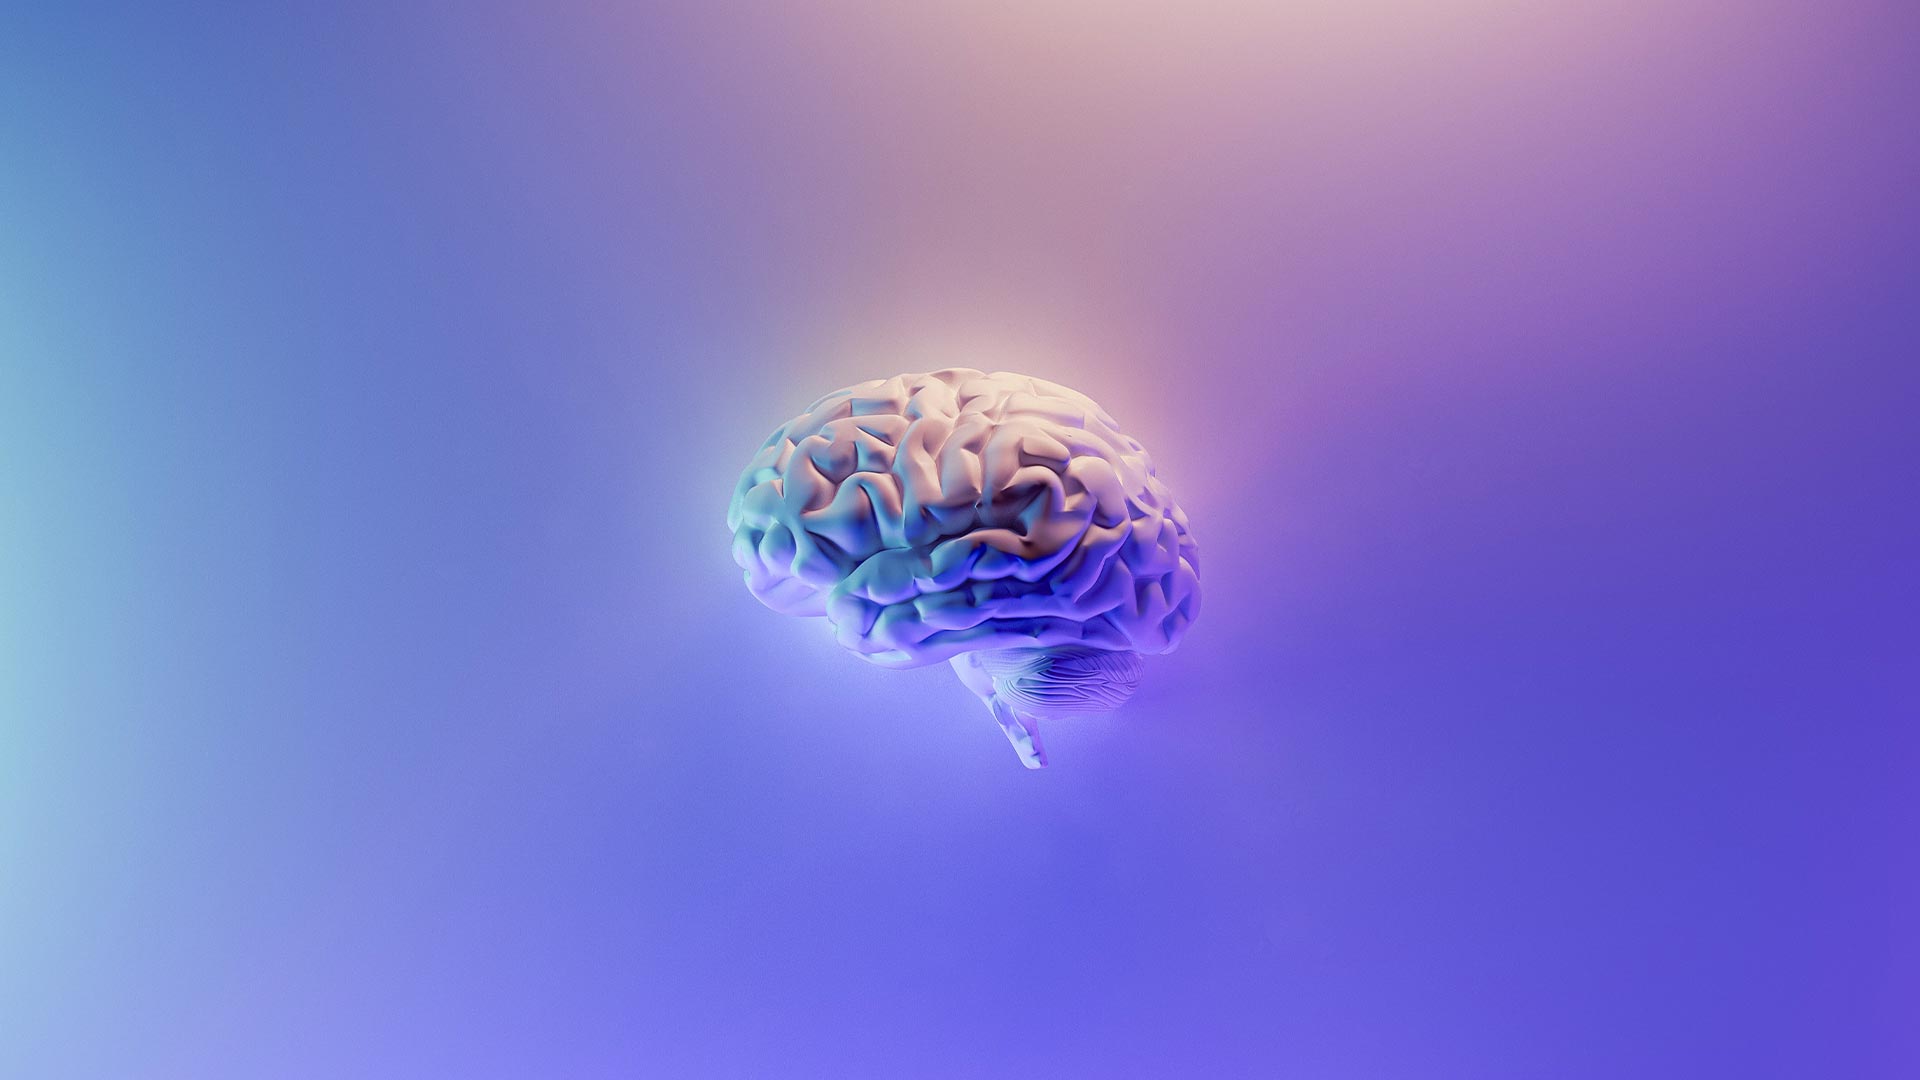 Immagine astratta del cervello umano